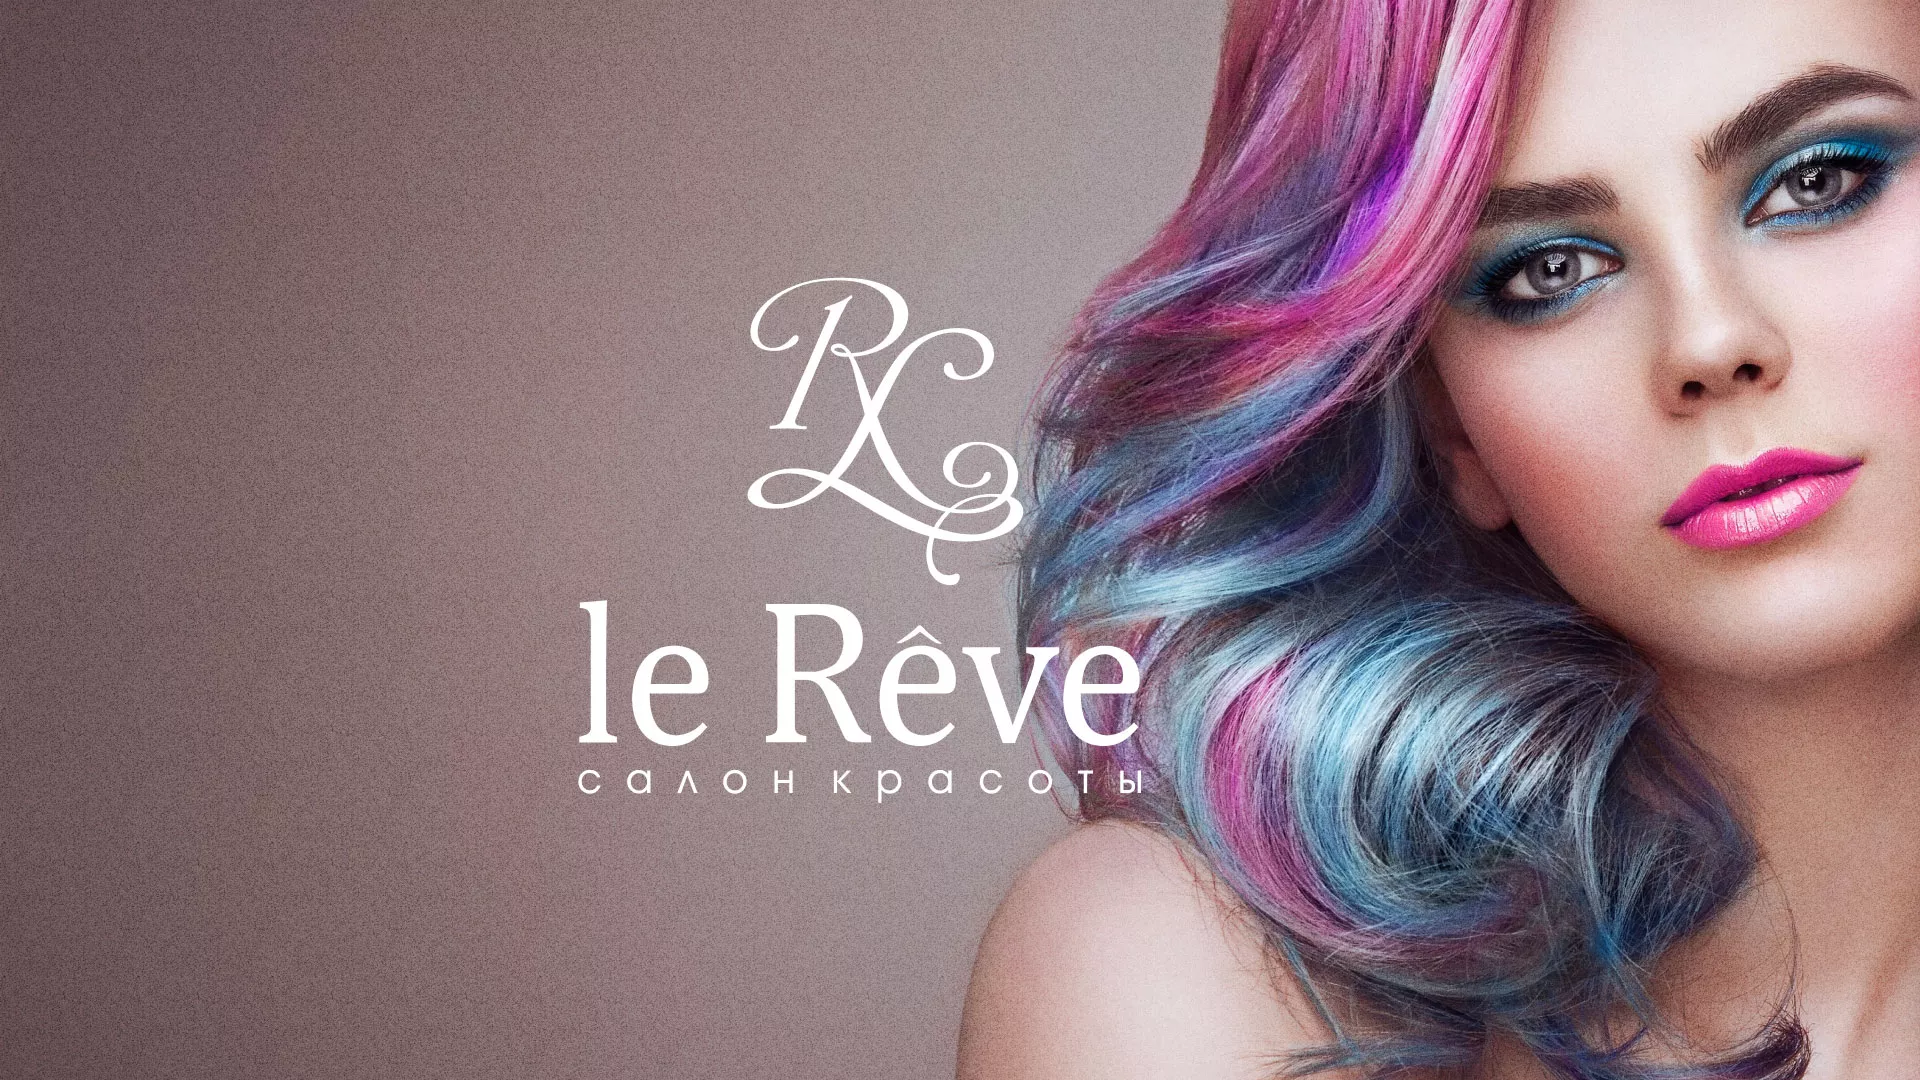 Создание сайта для салона красоты «Le Reve» в Оханске